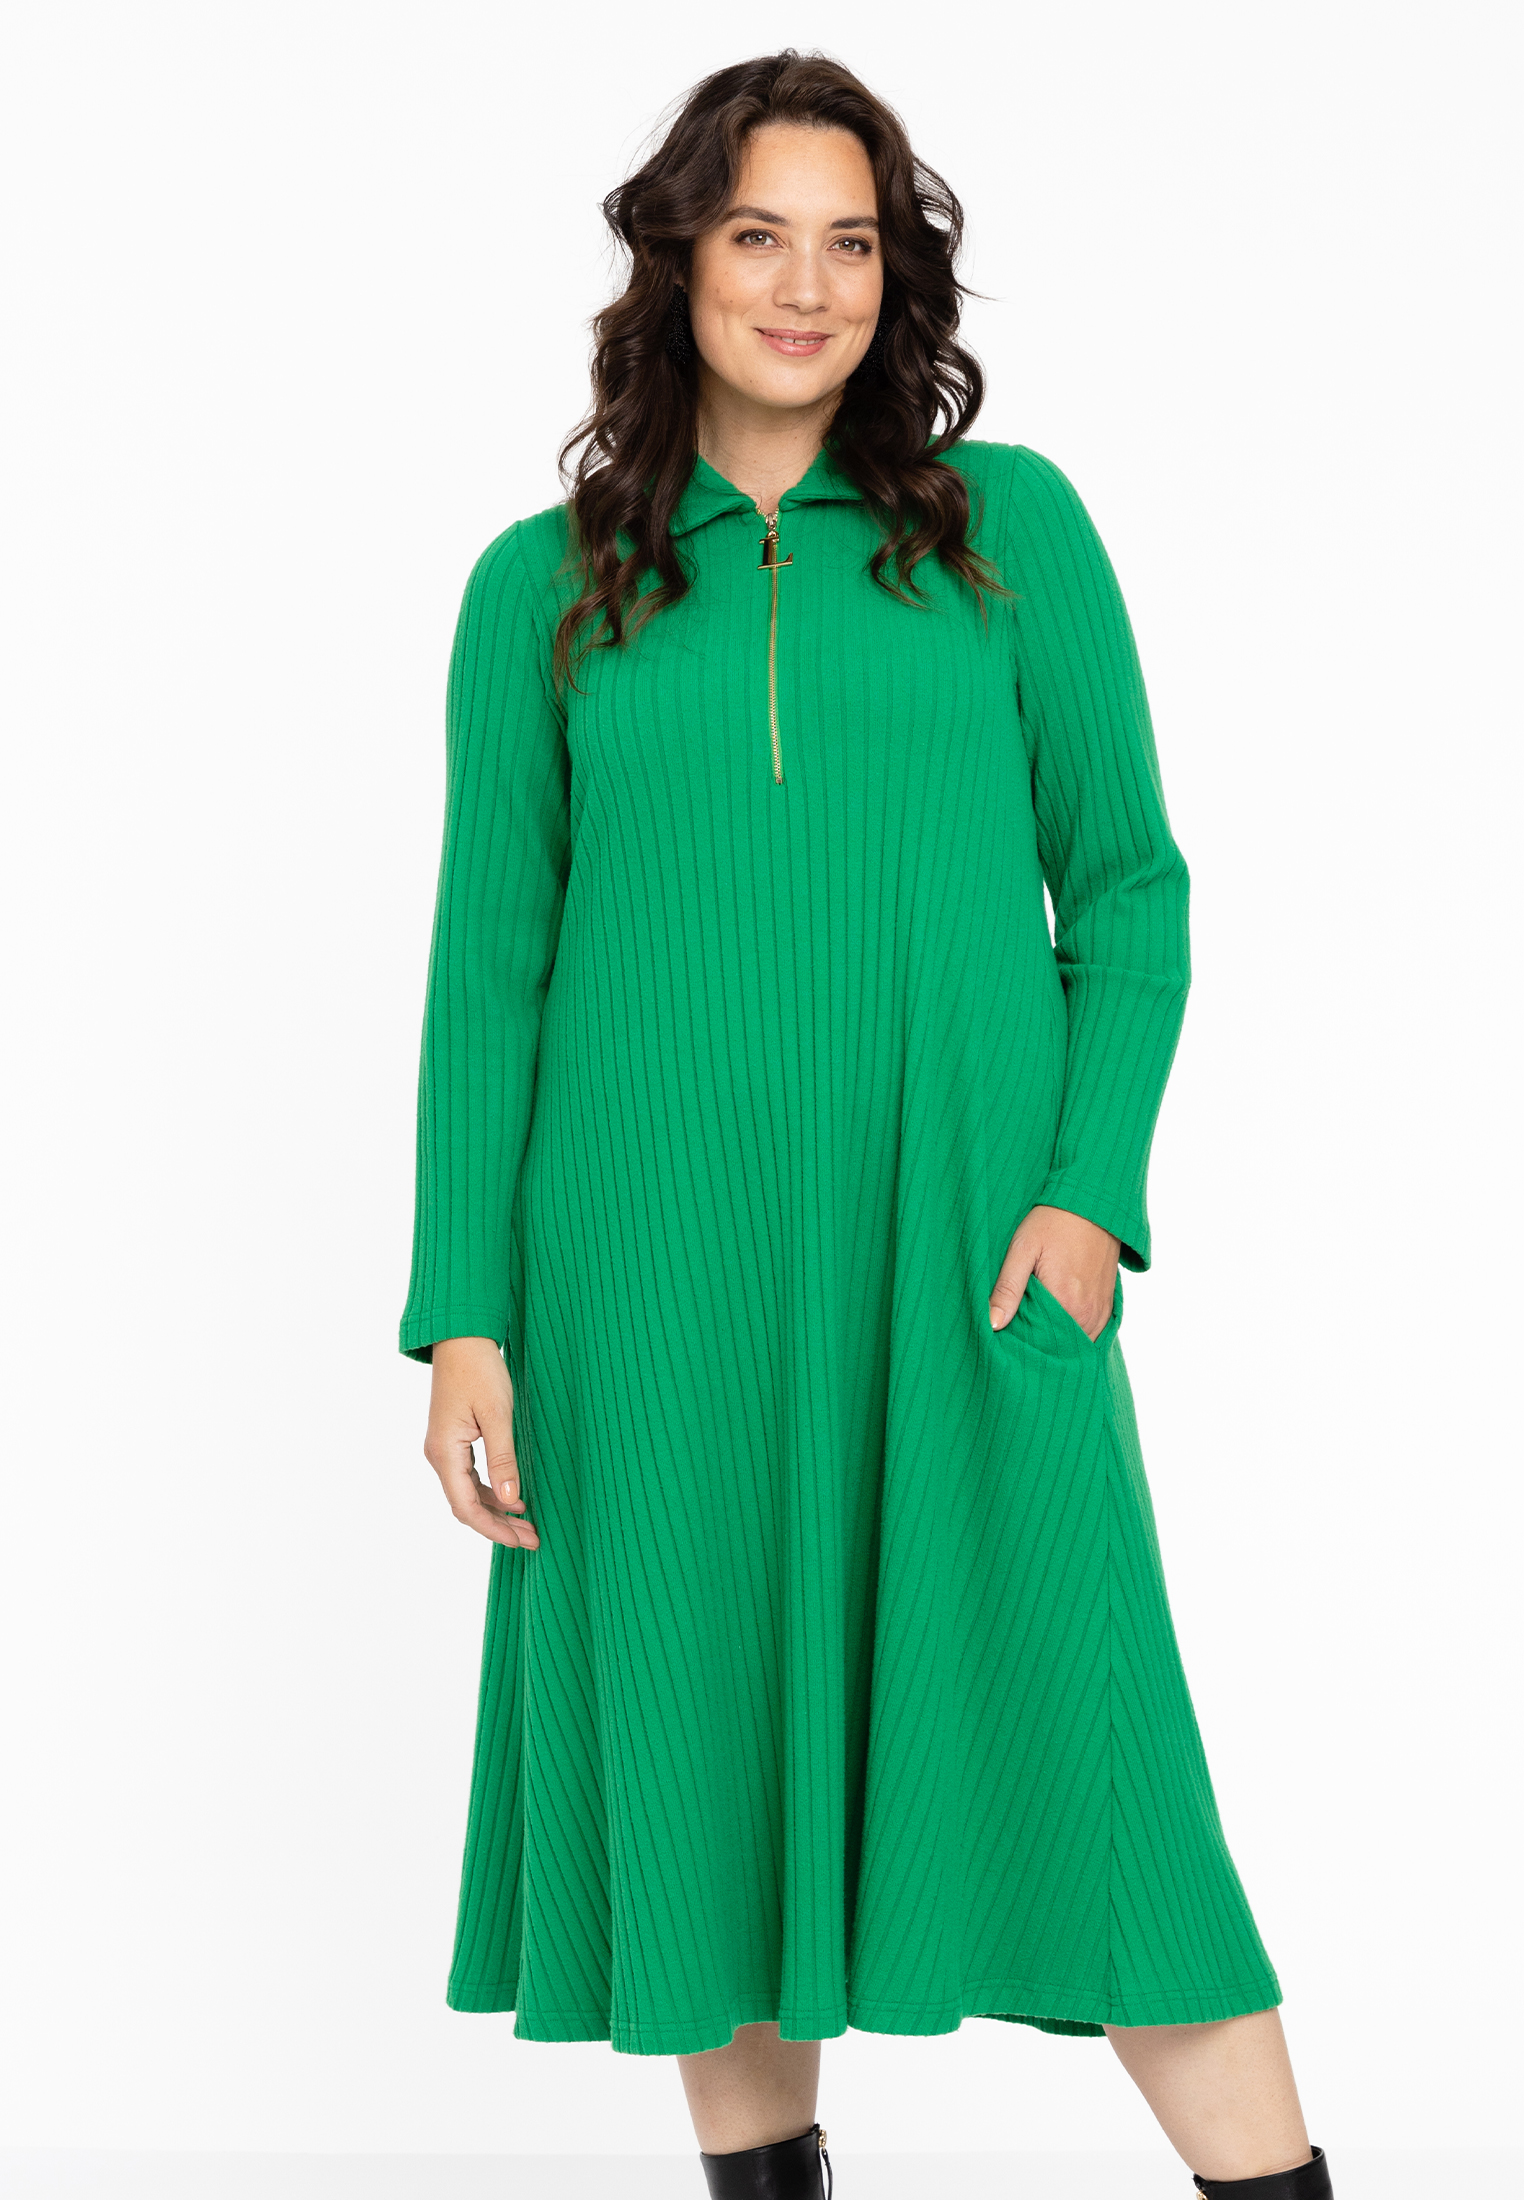 Lange jurk met rits RIB 54/56 green